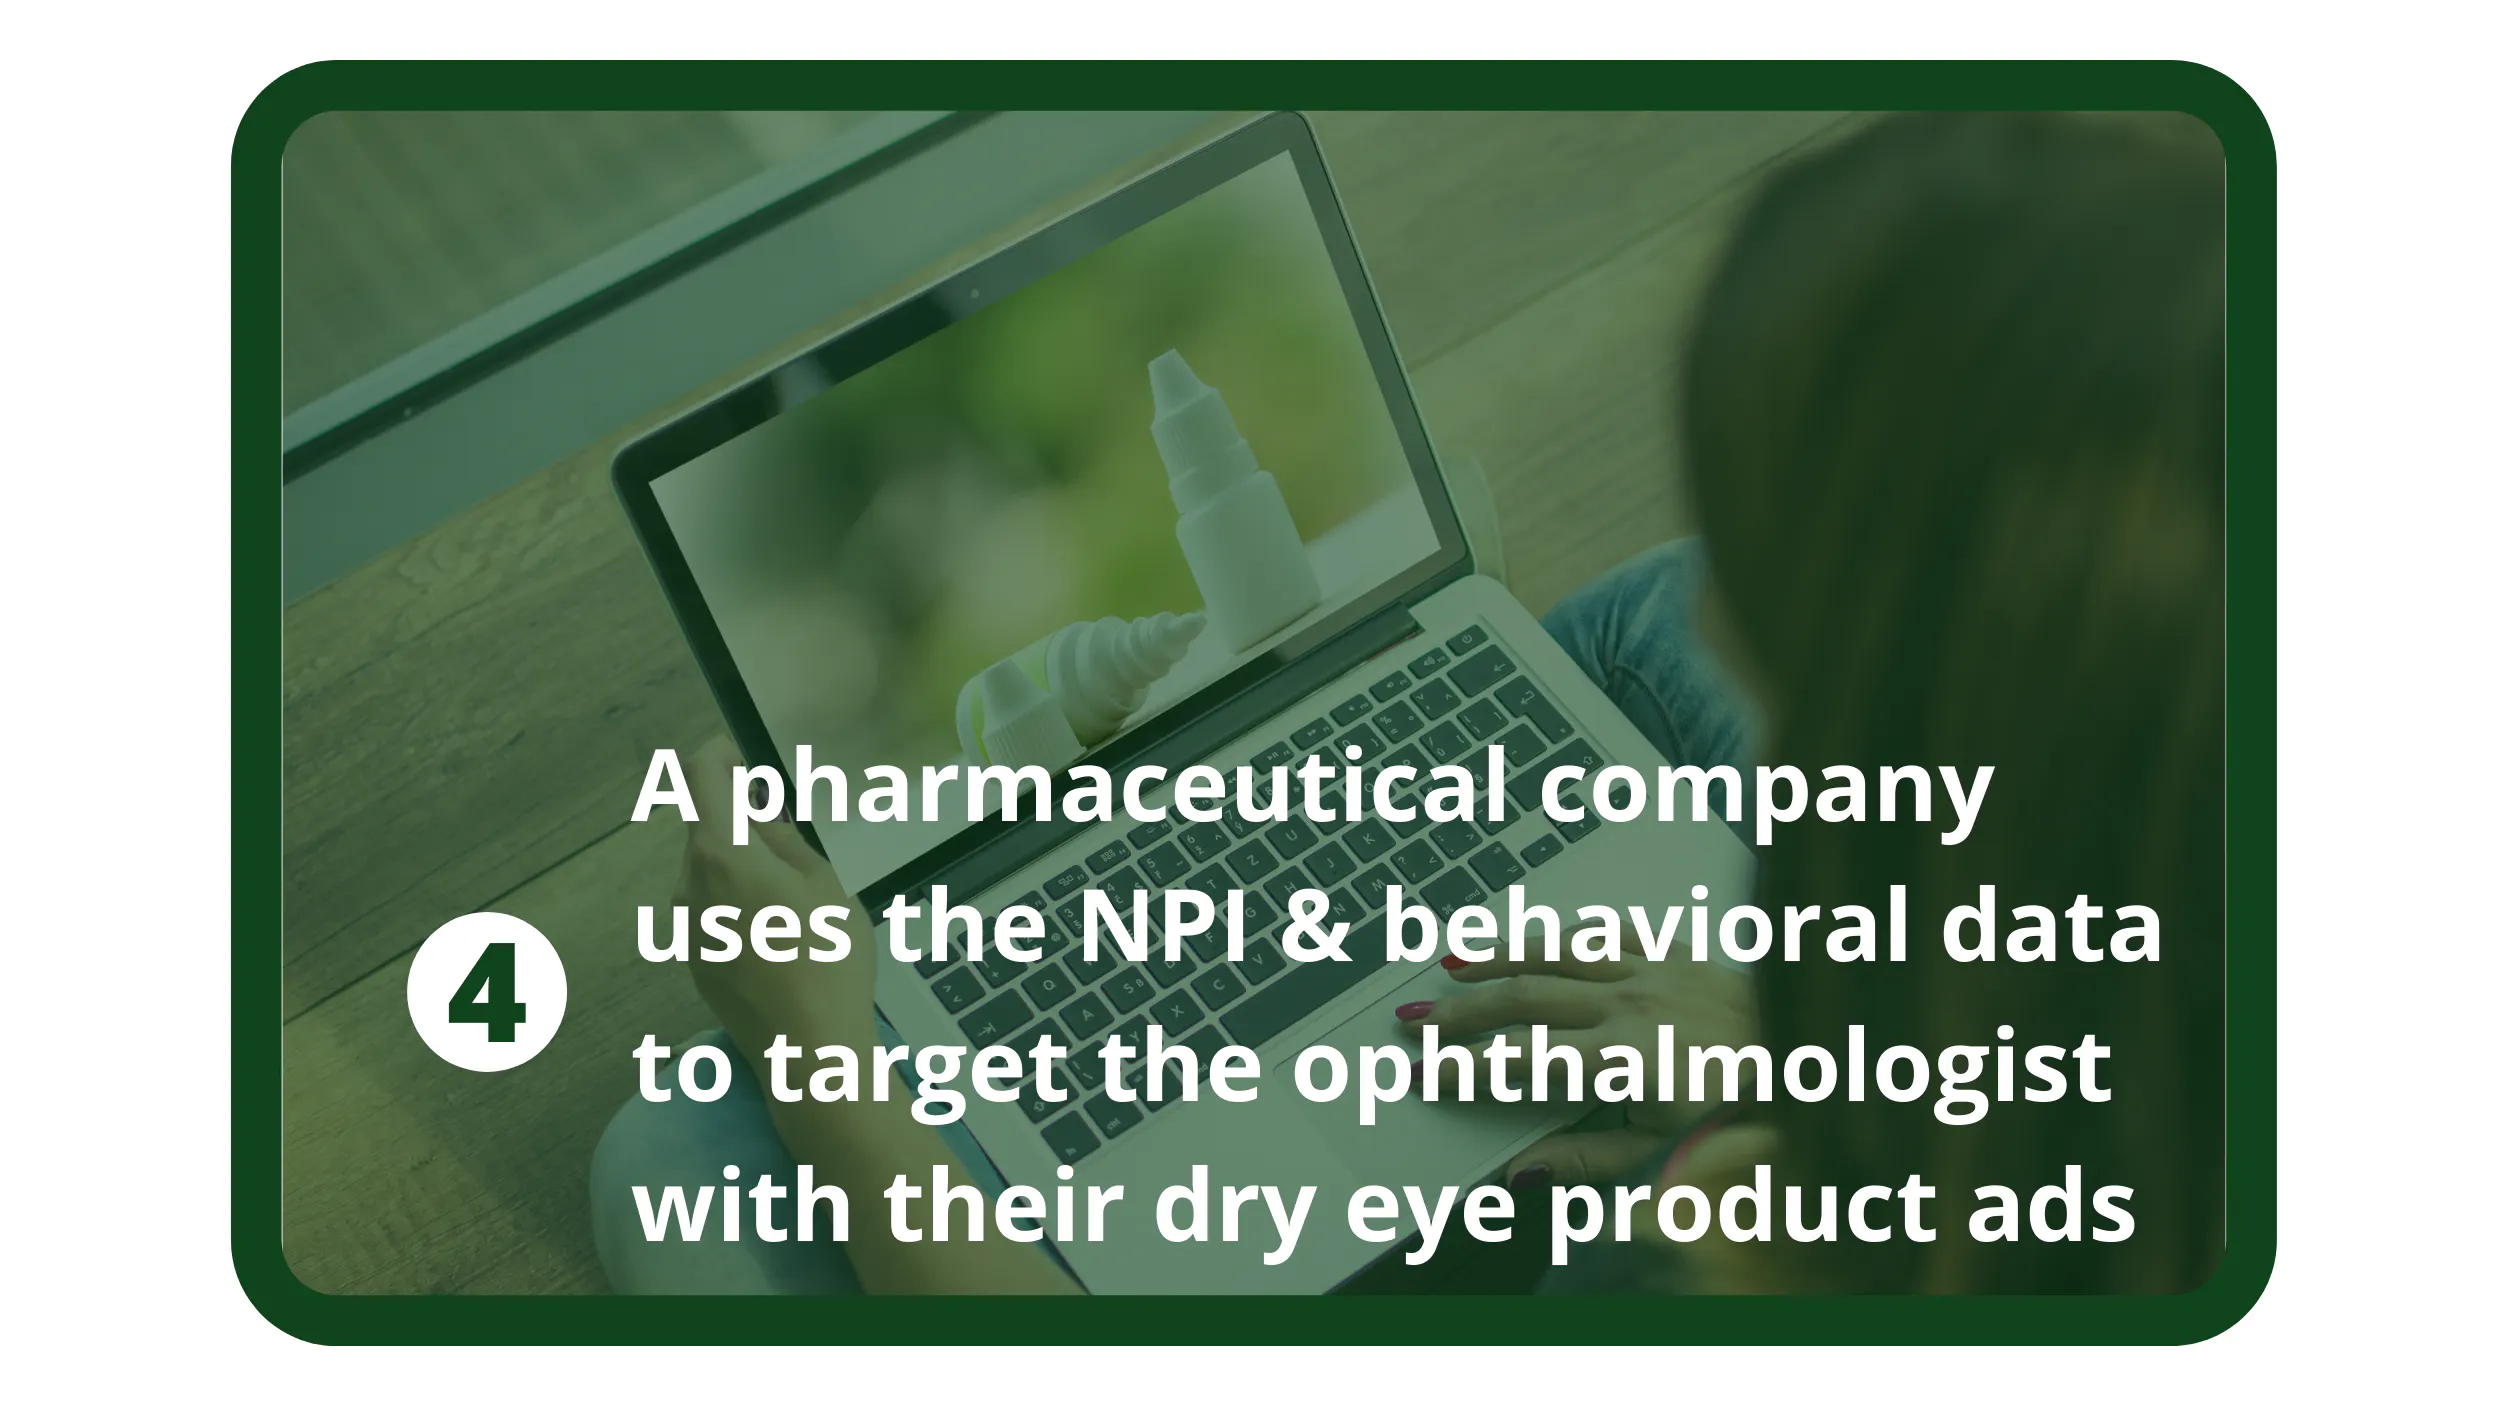 一家製藥公司使用 NPI 和行為數據來針對眼科醫生的乾眼產品廣告